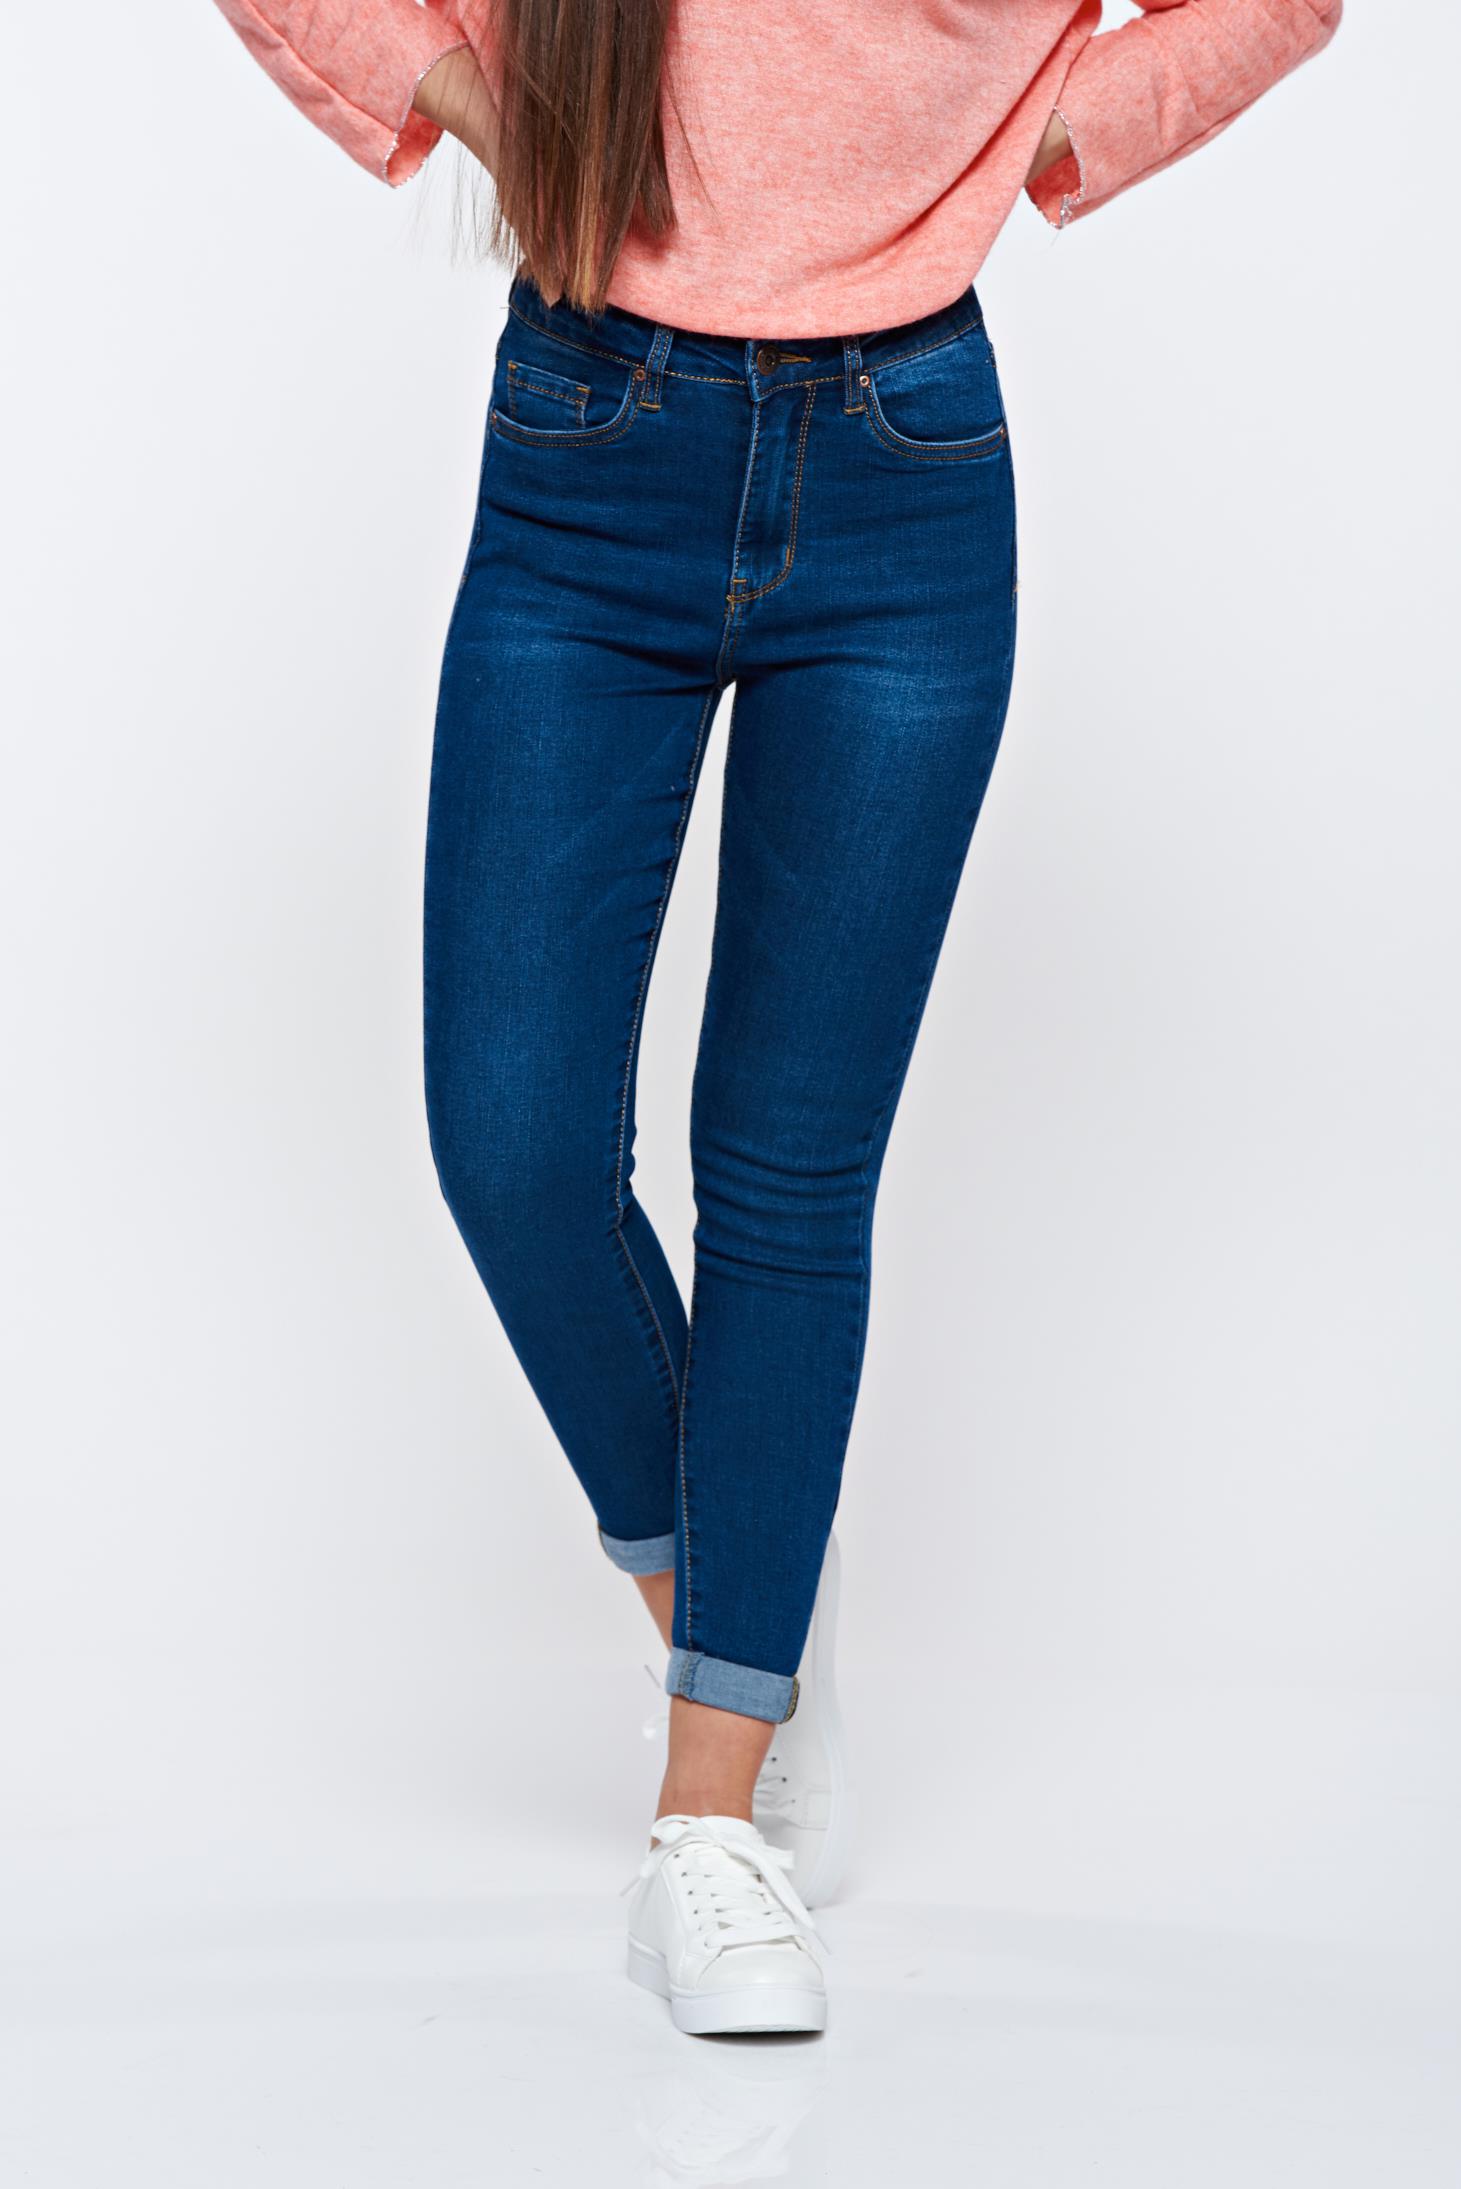 dark blue jeans high waist